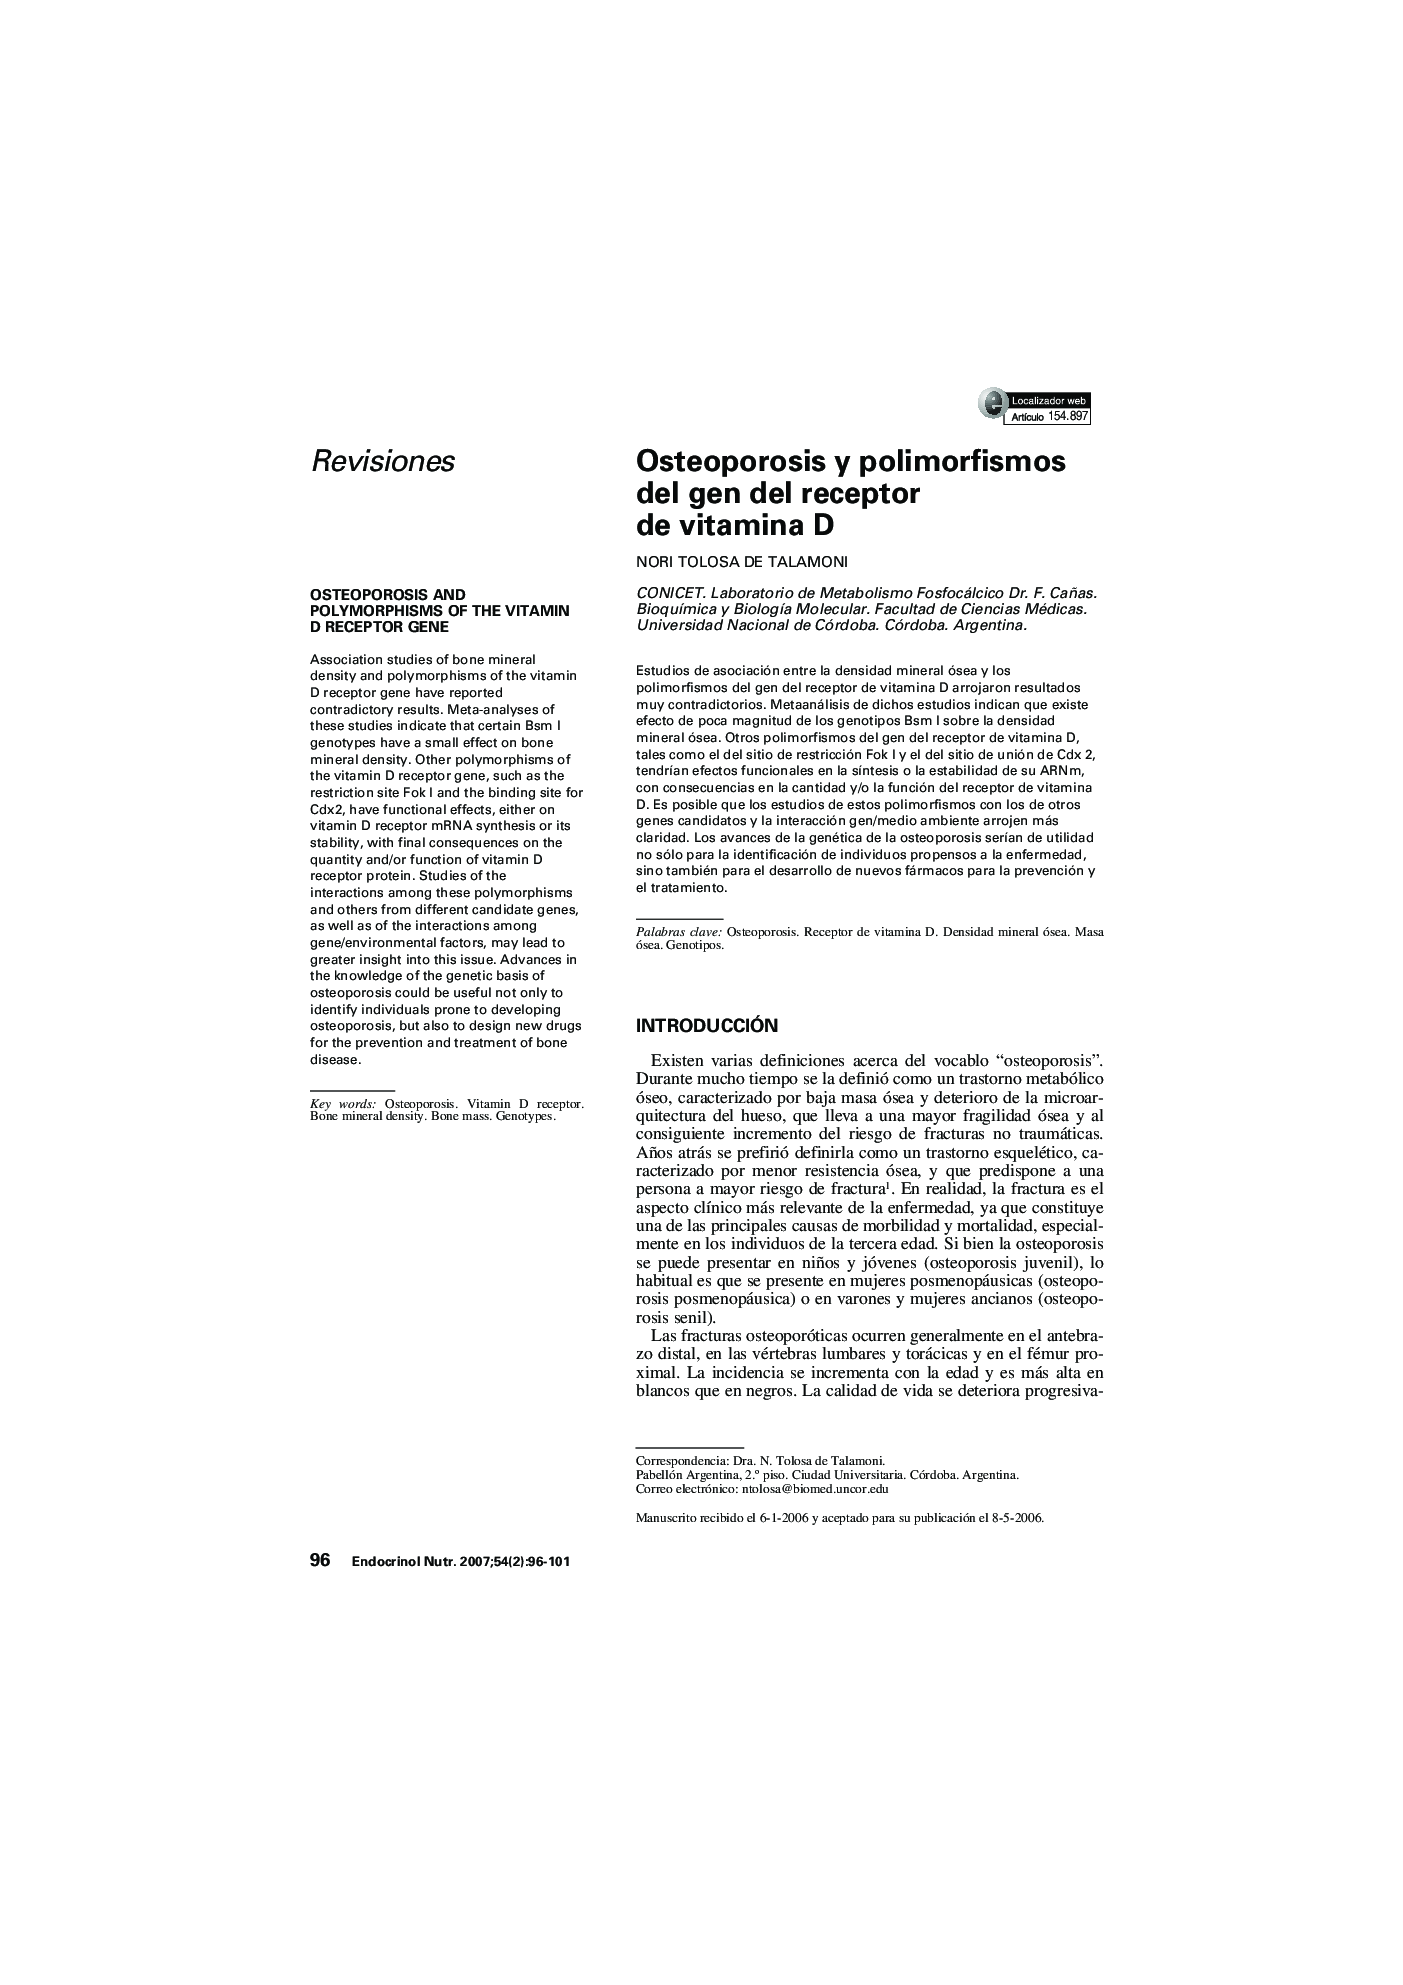 Osteoporosis y polimorfismos del gen del receptor de vitamina D